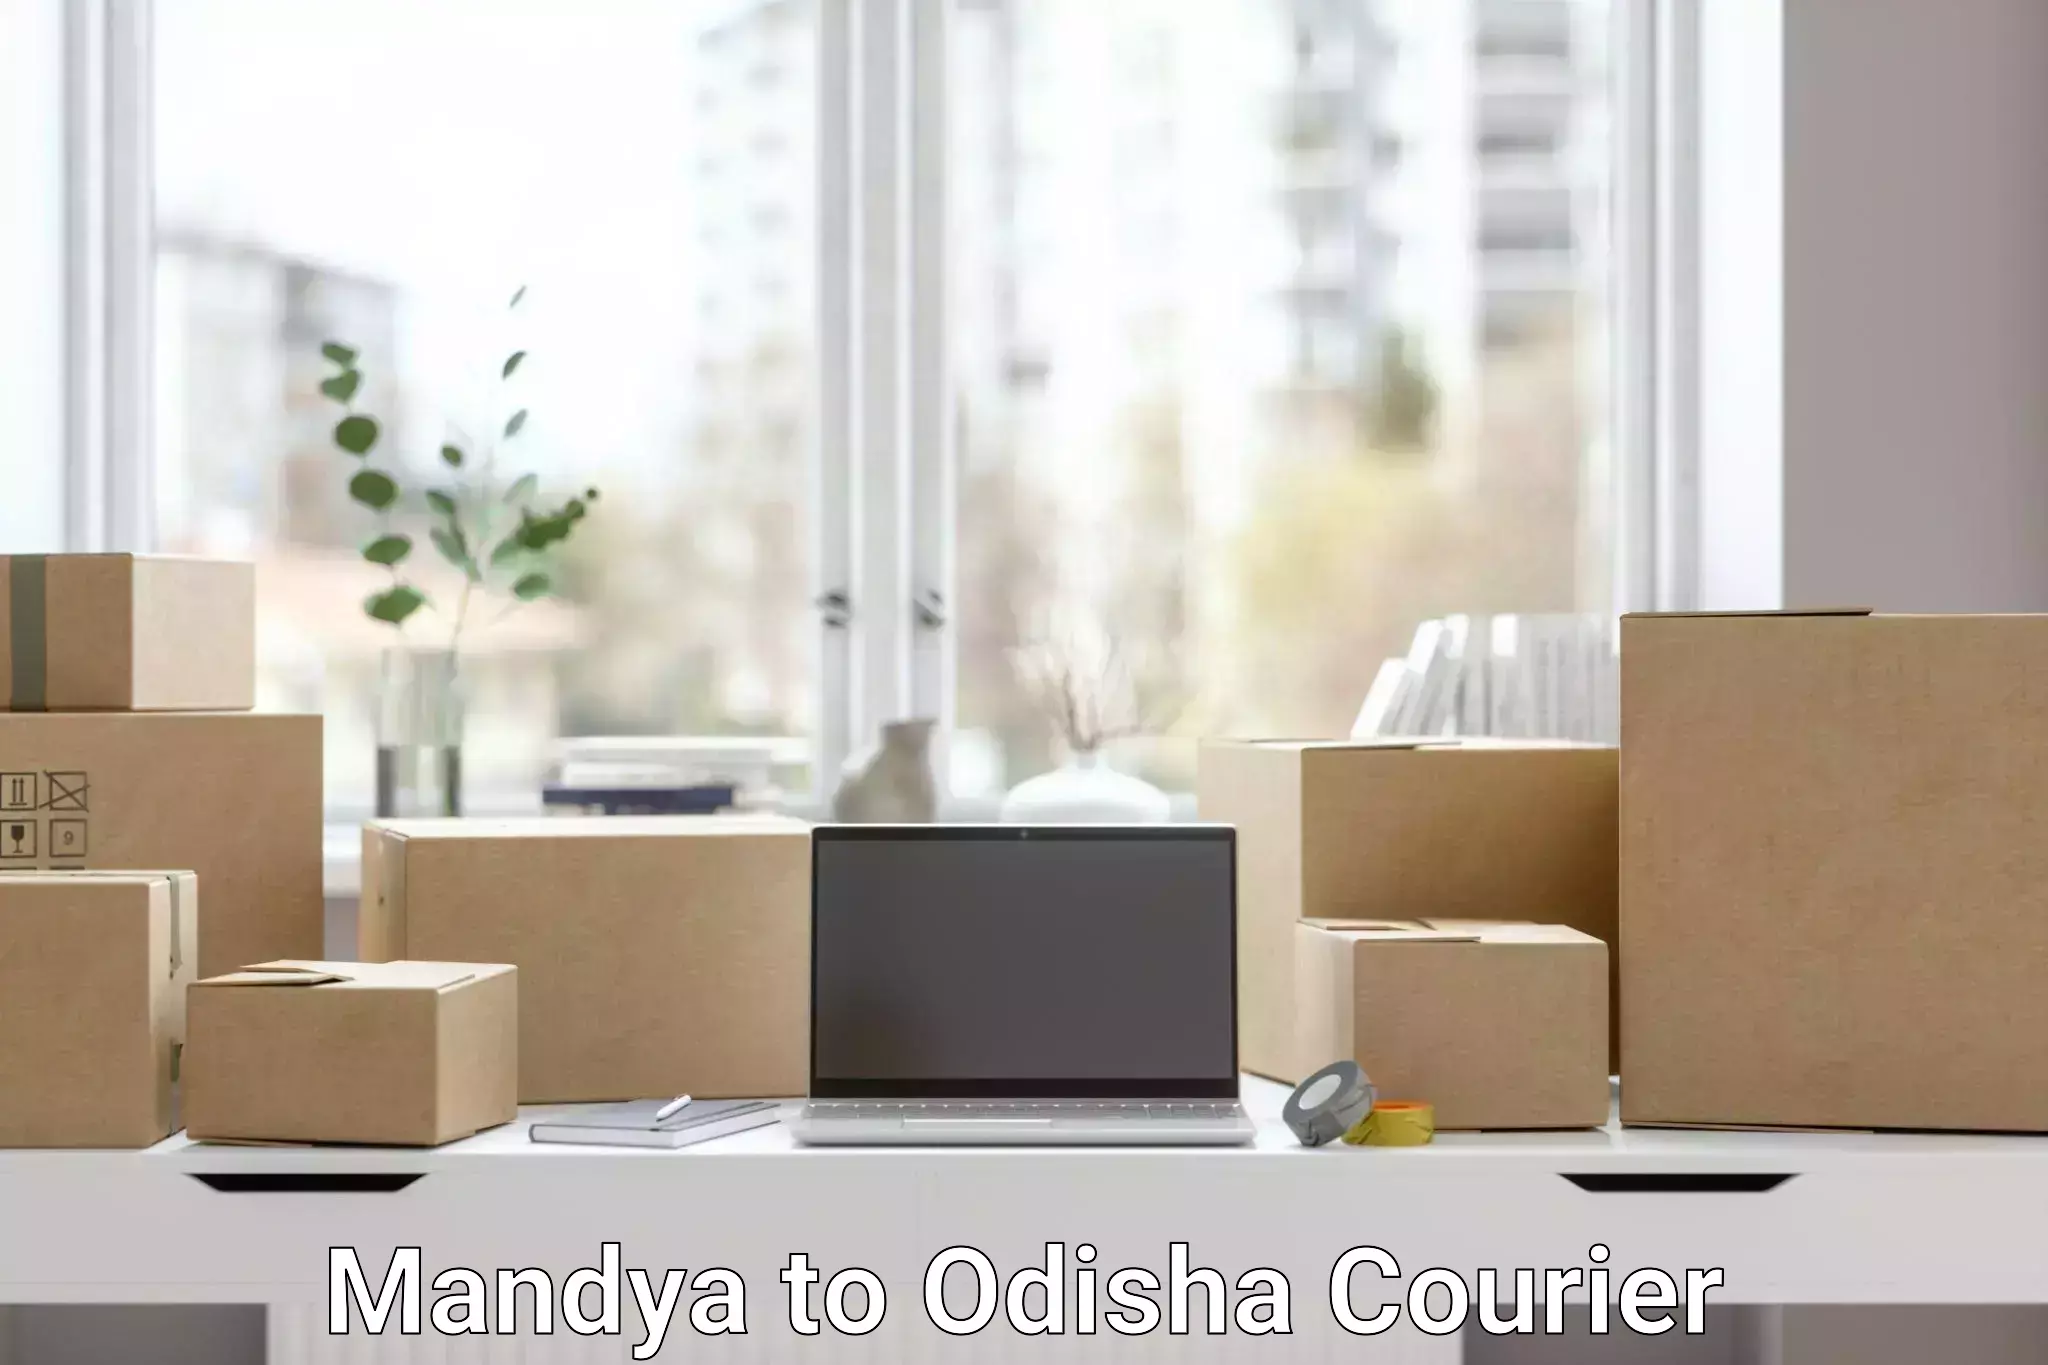 24-hour courier service Mandya to Odisha